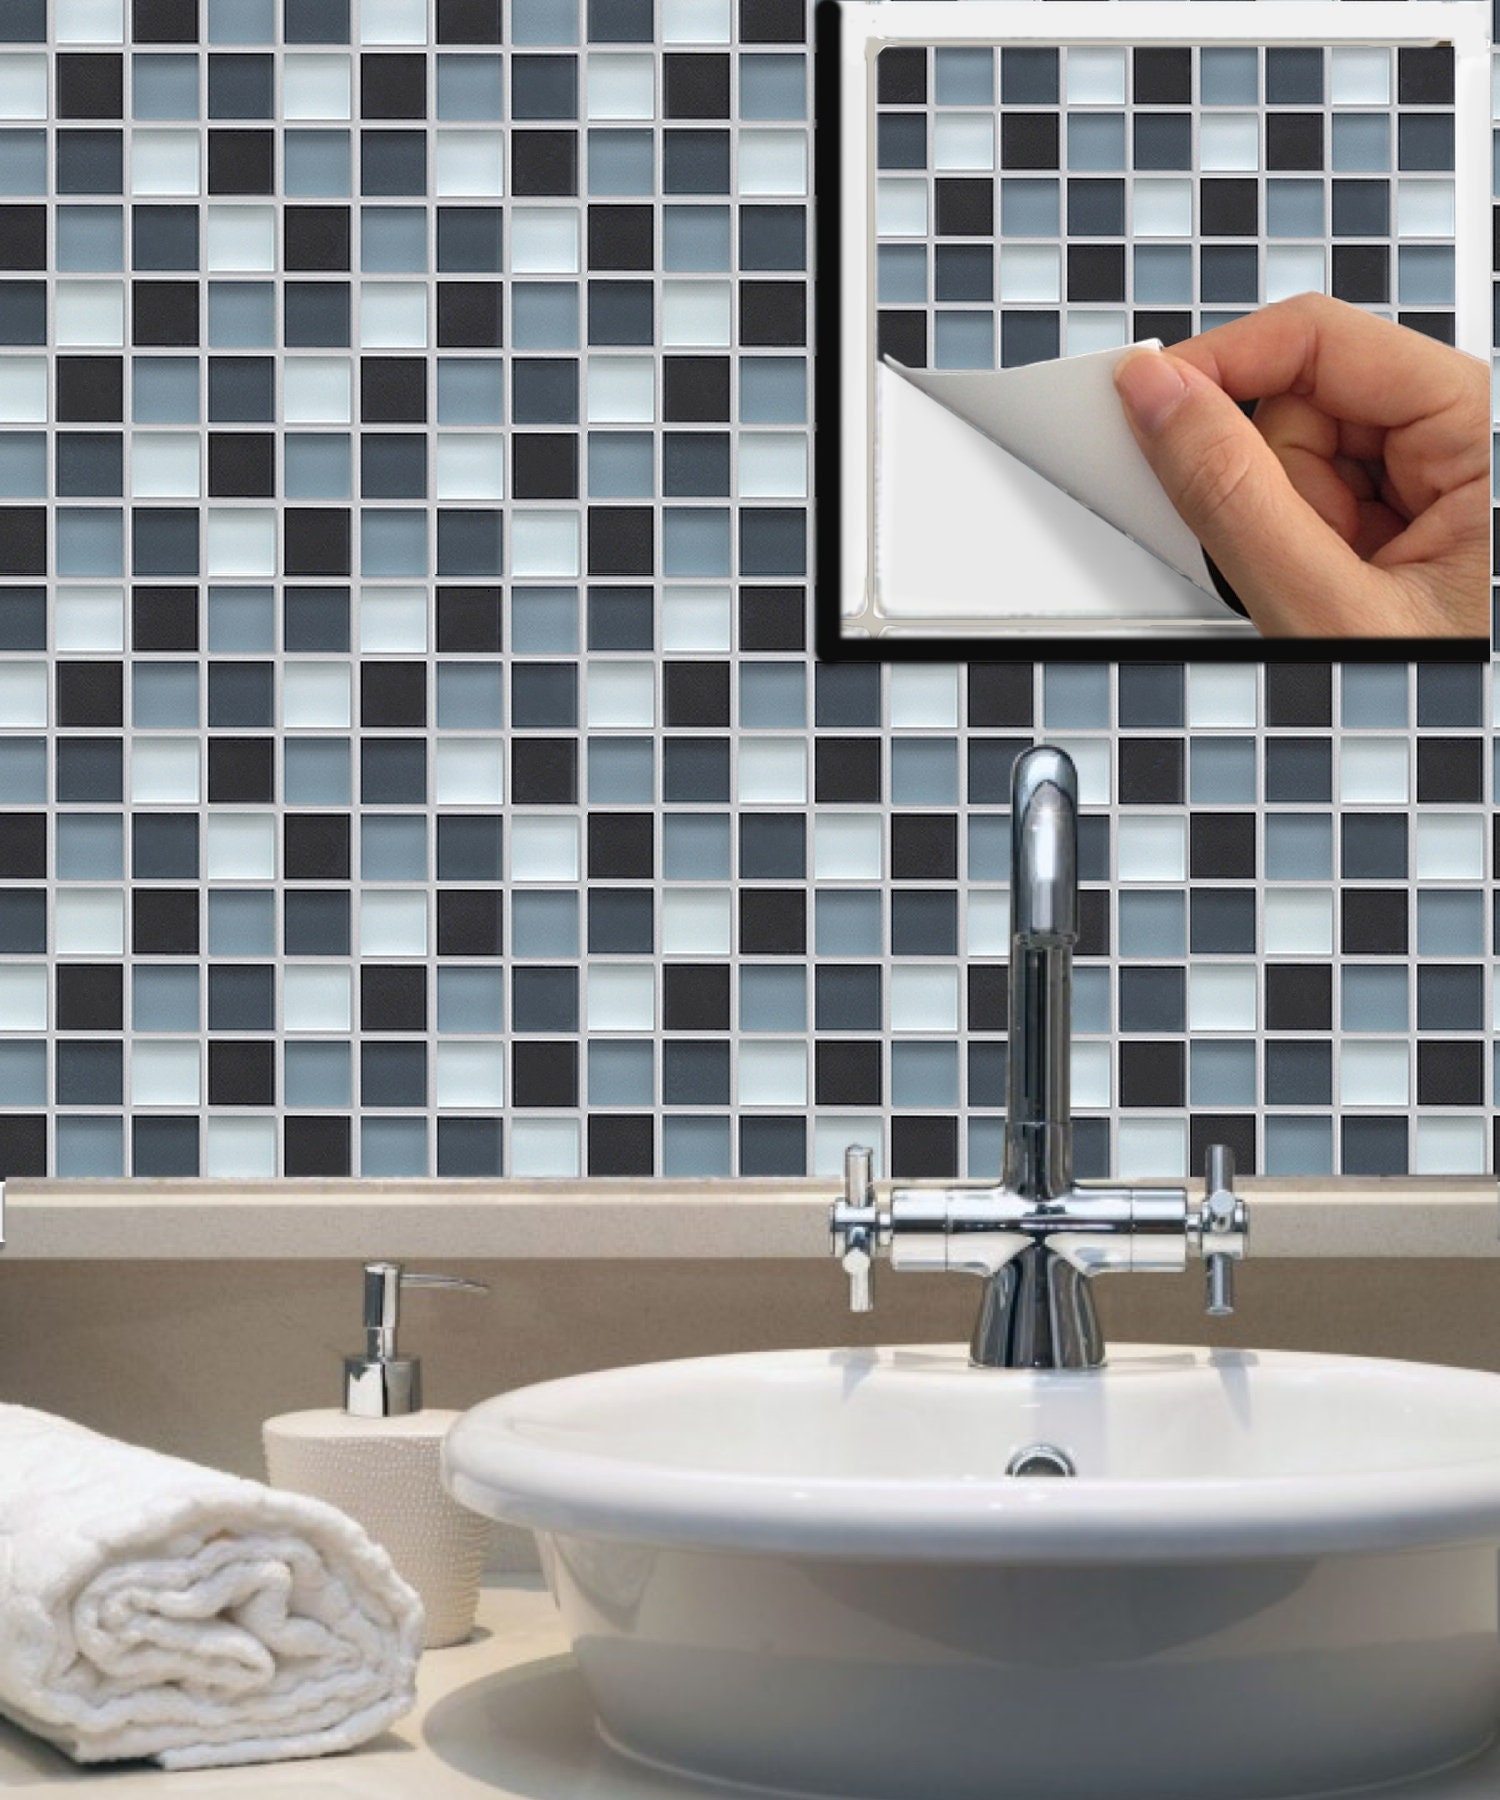 Kit 48 vinilos para azulejos de baños en tonos sepia